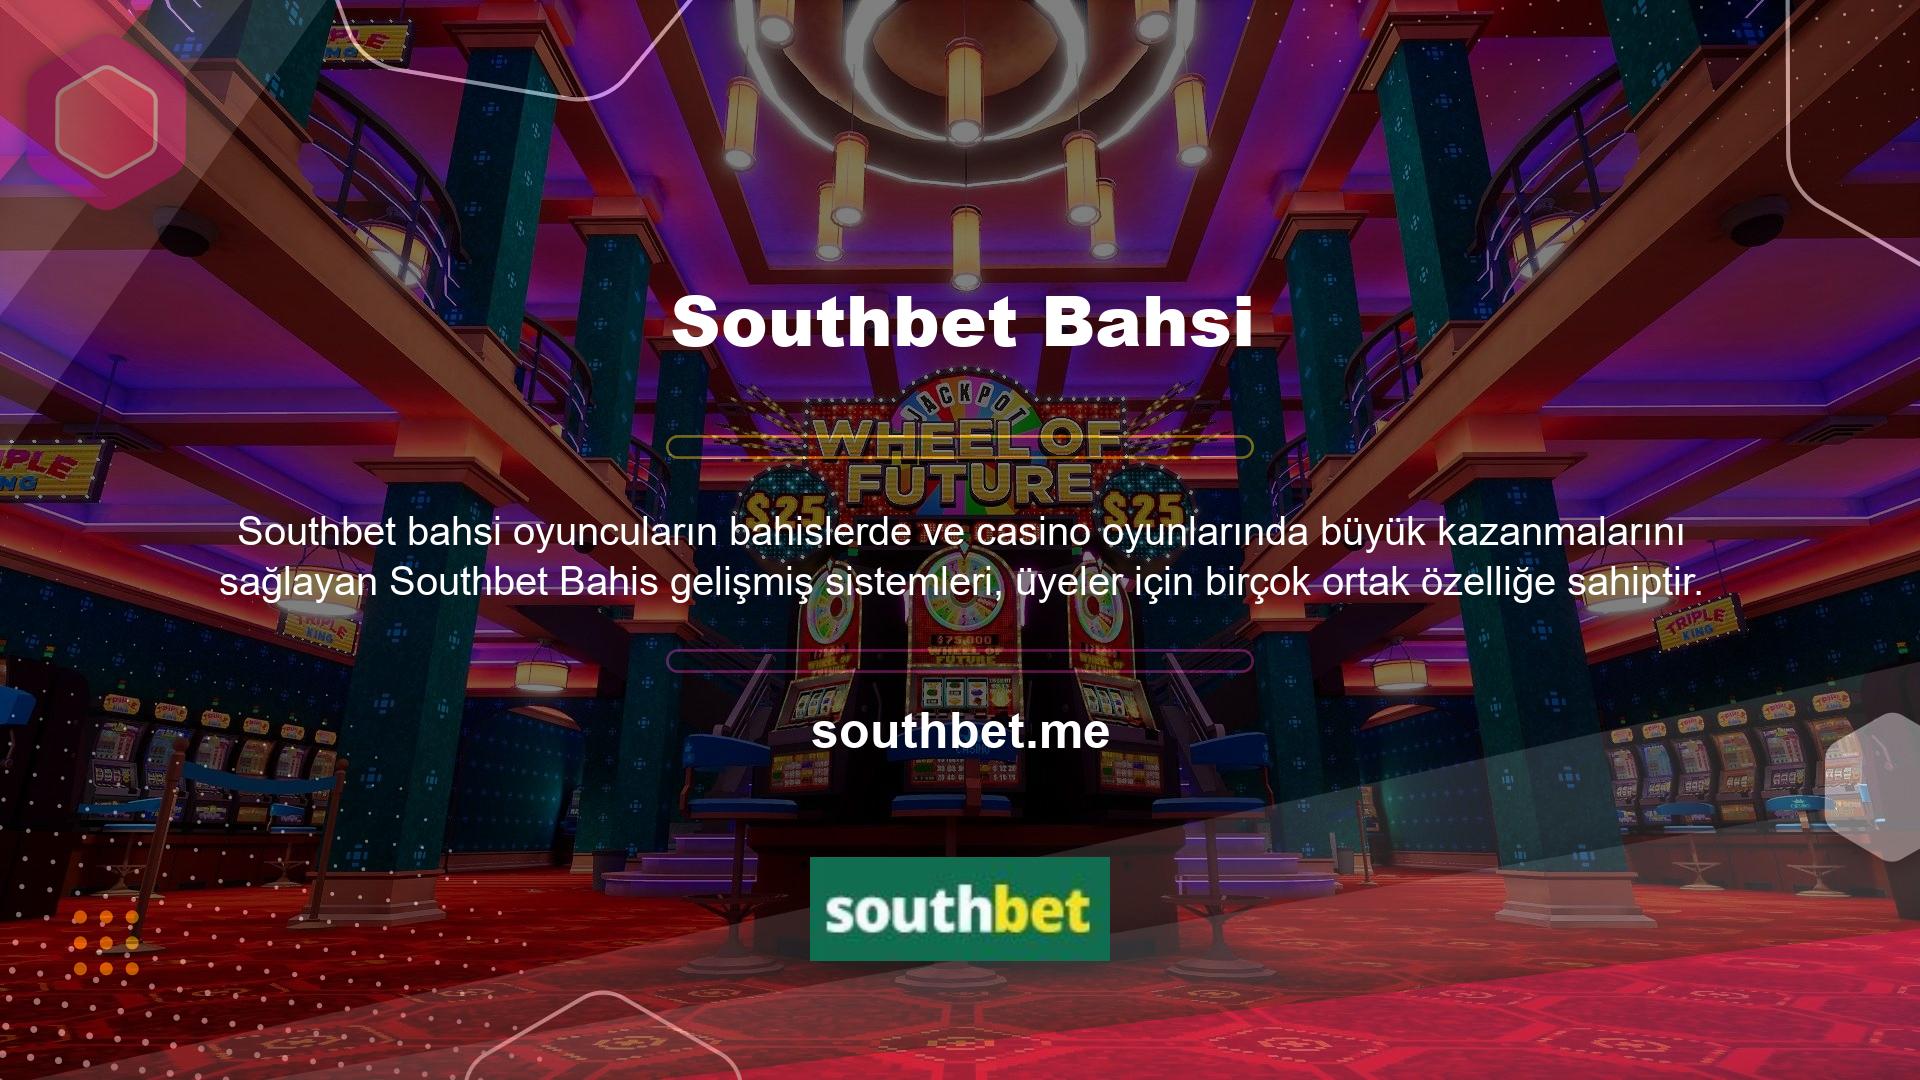 Southbet büyük ödüller kazanabileceğiniz giriş alanı, üyelere sunulan yüksek oranlar, oyun çeşitliliği, rekabetçi bahis çeşitliliği, canlı bahis ve canlı casino seçenekleri nedeniyle oyuncu tercihinin popüler bir nedeni olarak görülüyor